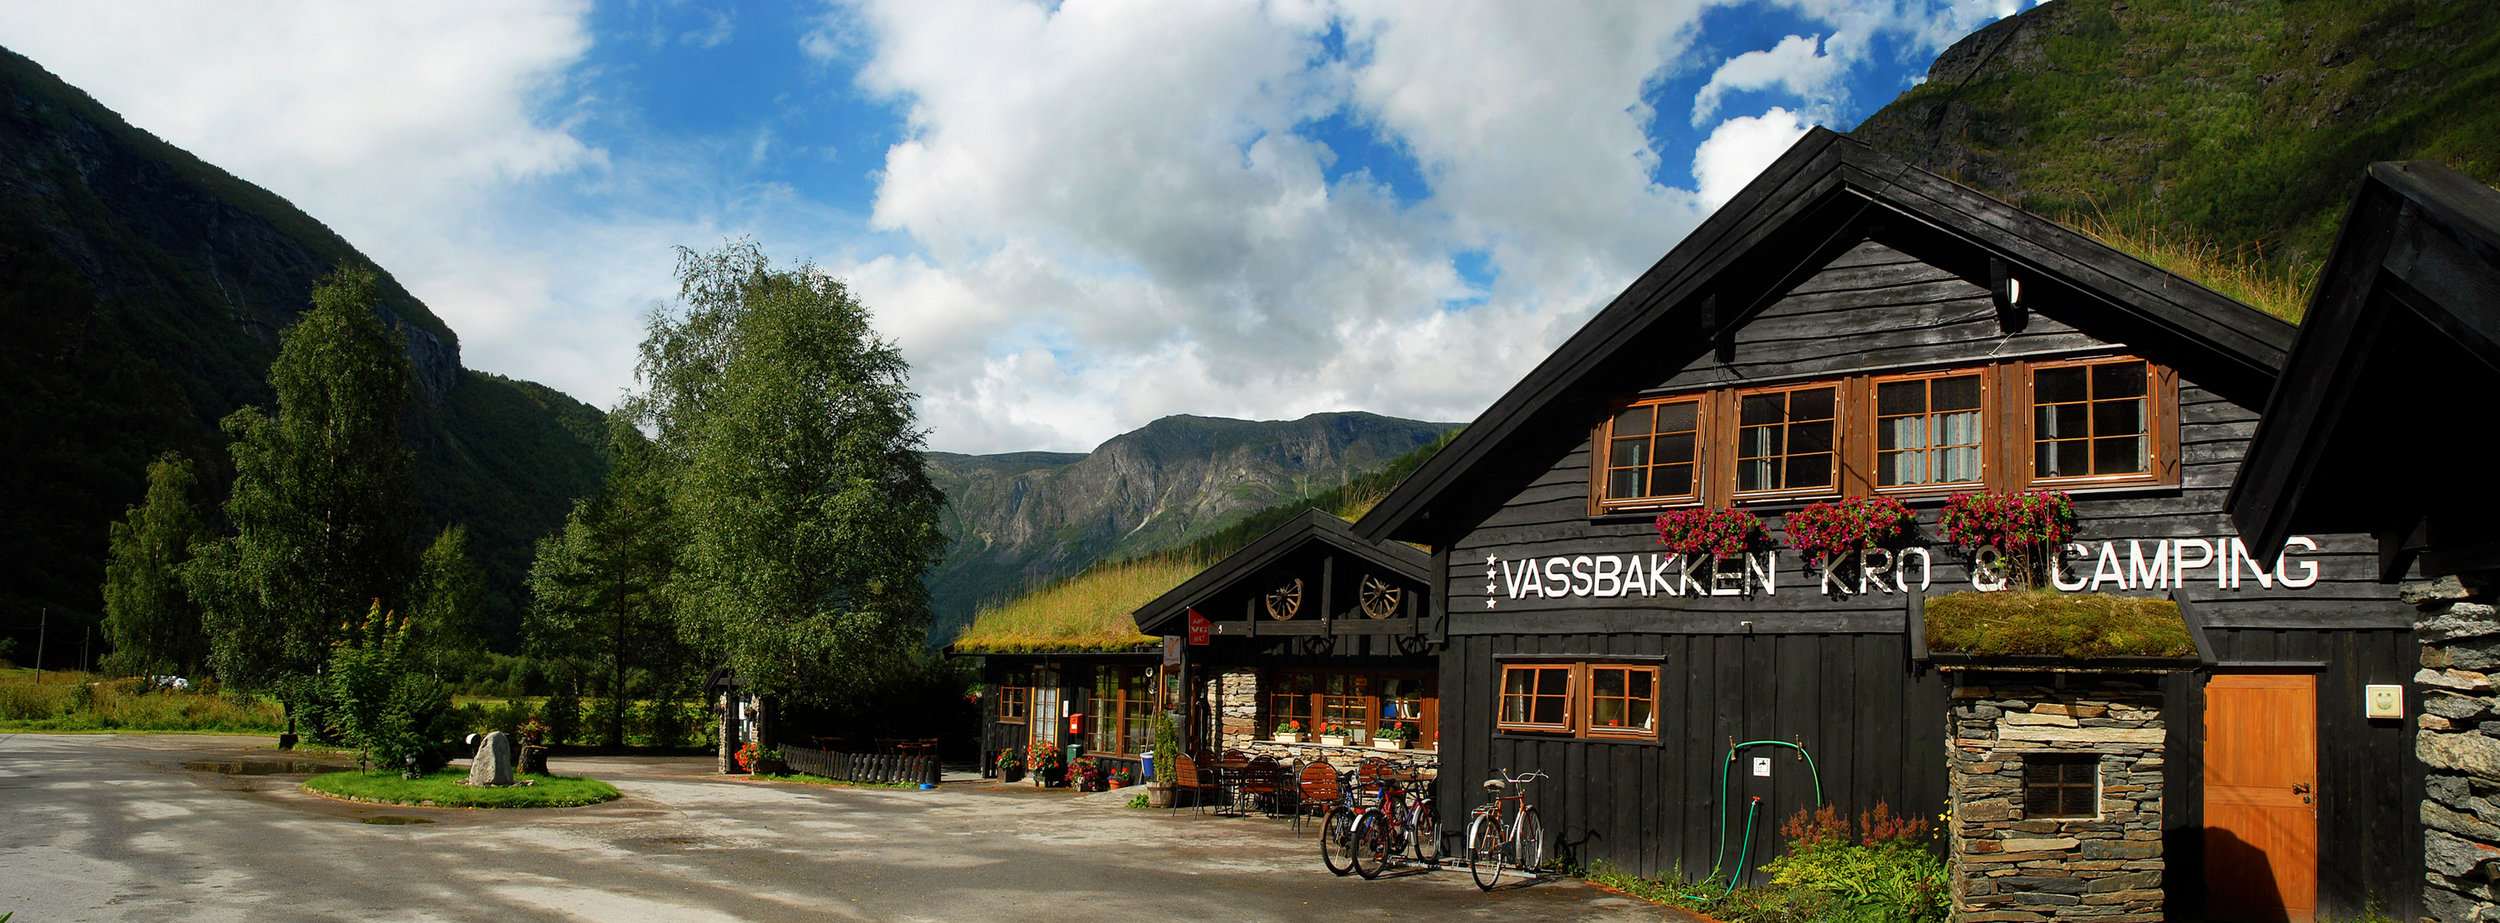  - Welcome to  Vassbakken  Kro &amp; Camping - 